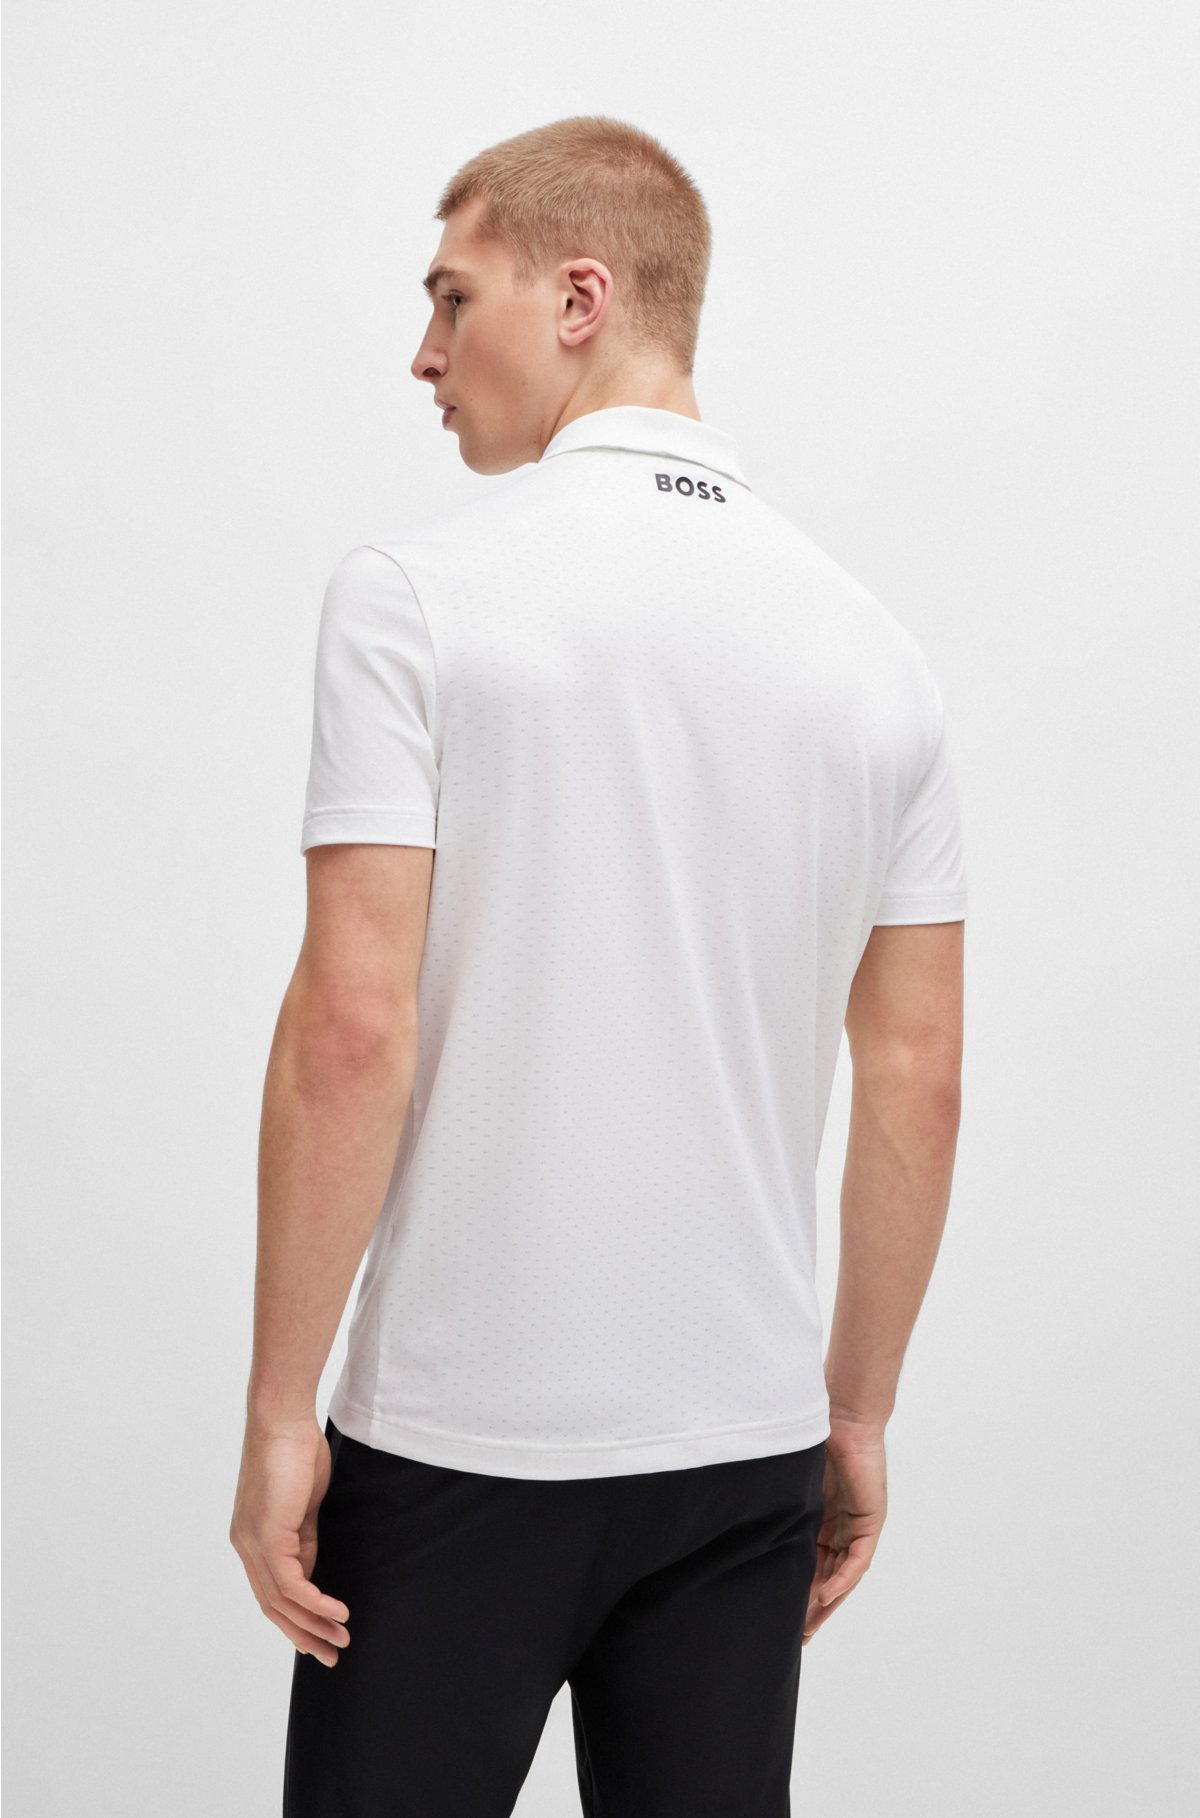 Degradé-jacquard polo shirt with contrast logo, White